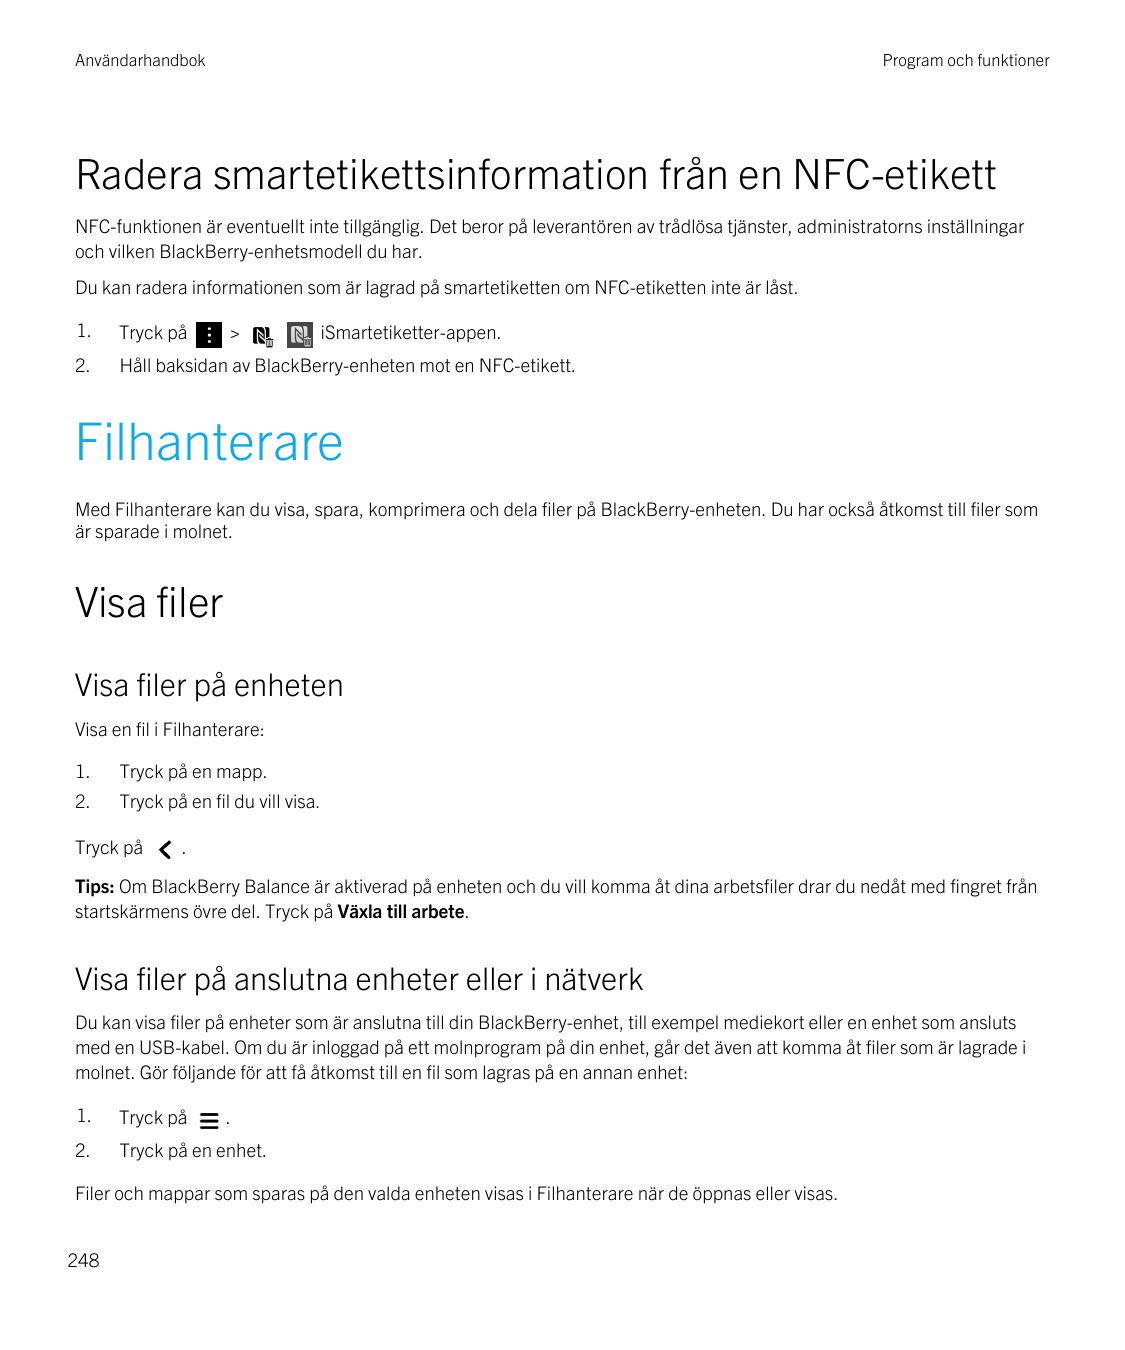 AnvändarhandbokProgram och funktionerRadera smartetikettsinformation från en NFC-etikettNFC-funktionen är eventuellt inte tillgä